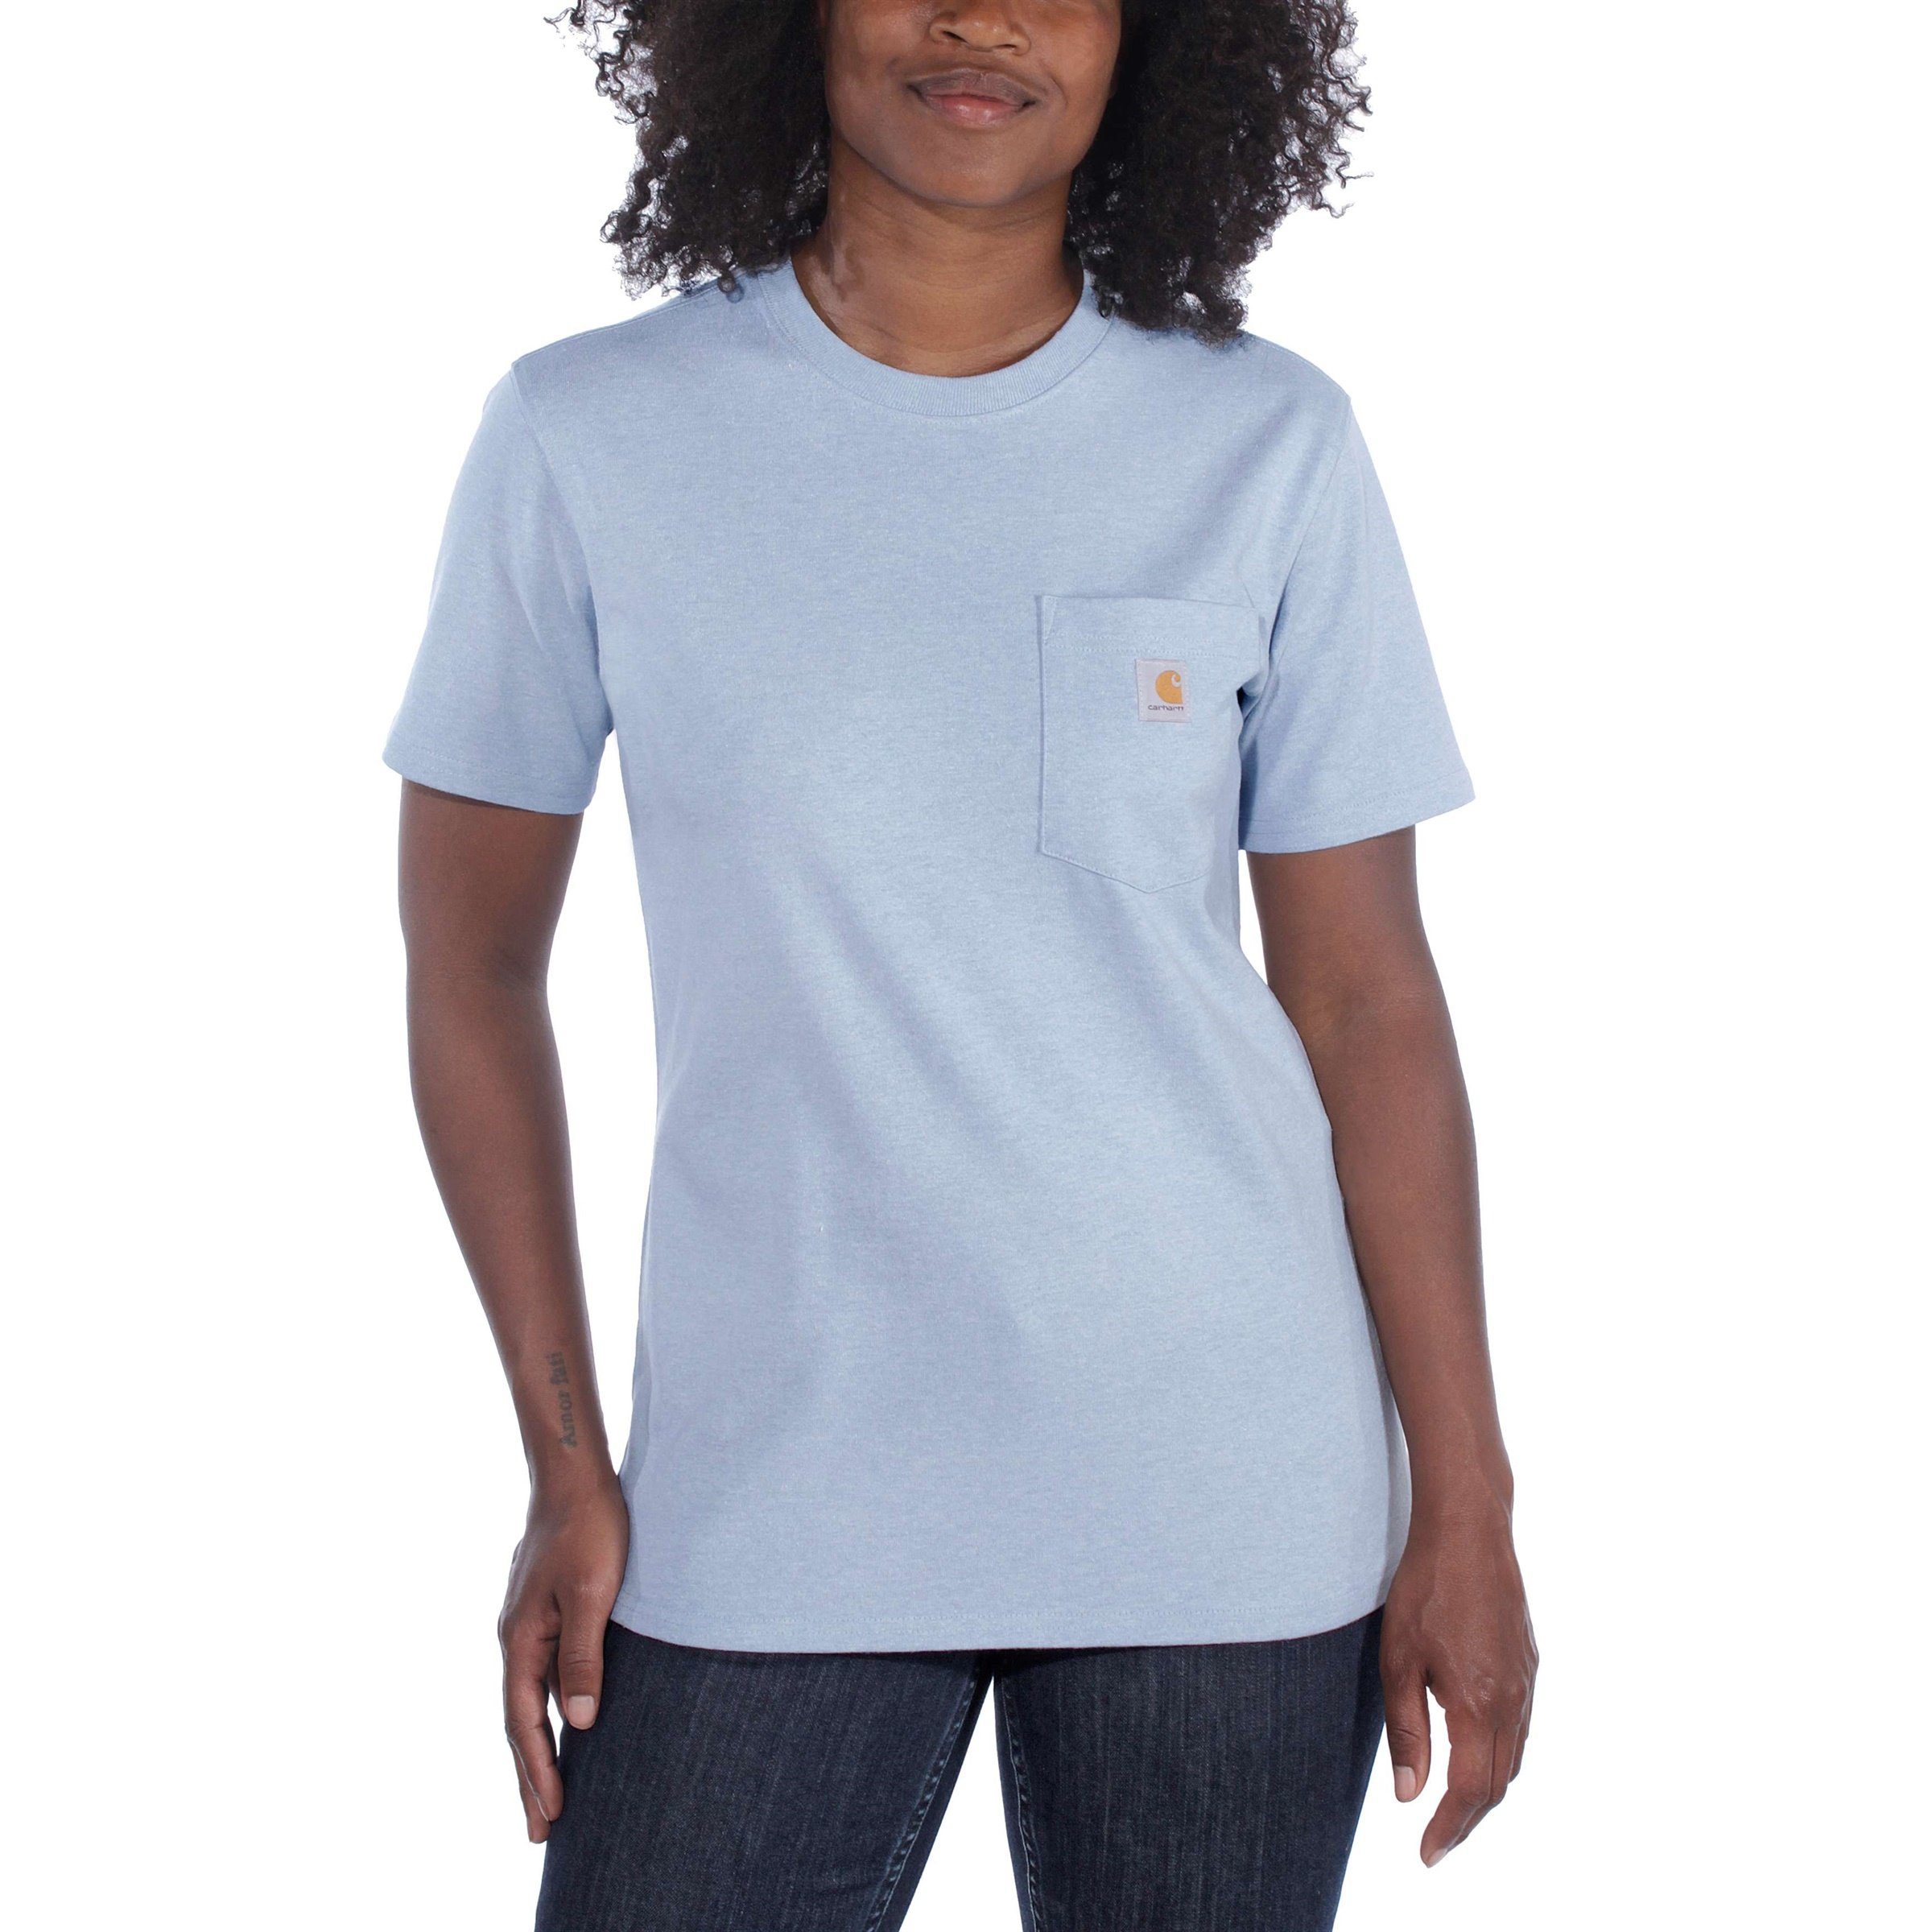 Carhartt T-Shirt Pocket Damen Carhartt Adult T-Shirt Short-Sleeve powder nep Heavyweight Loose blue Fit